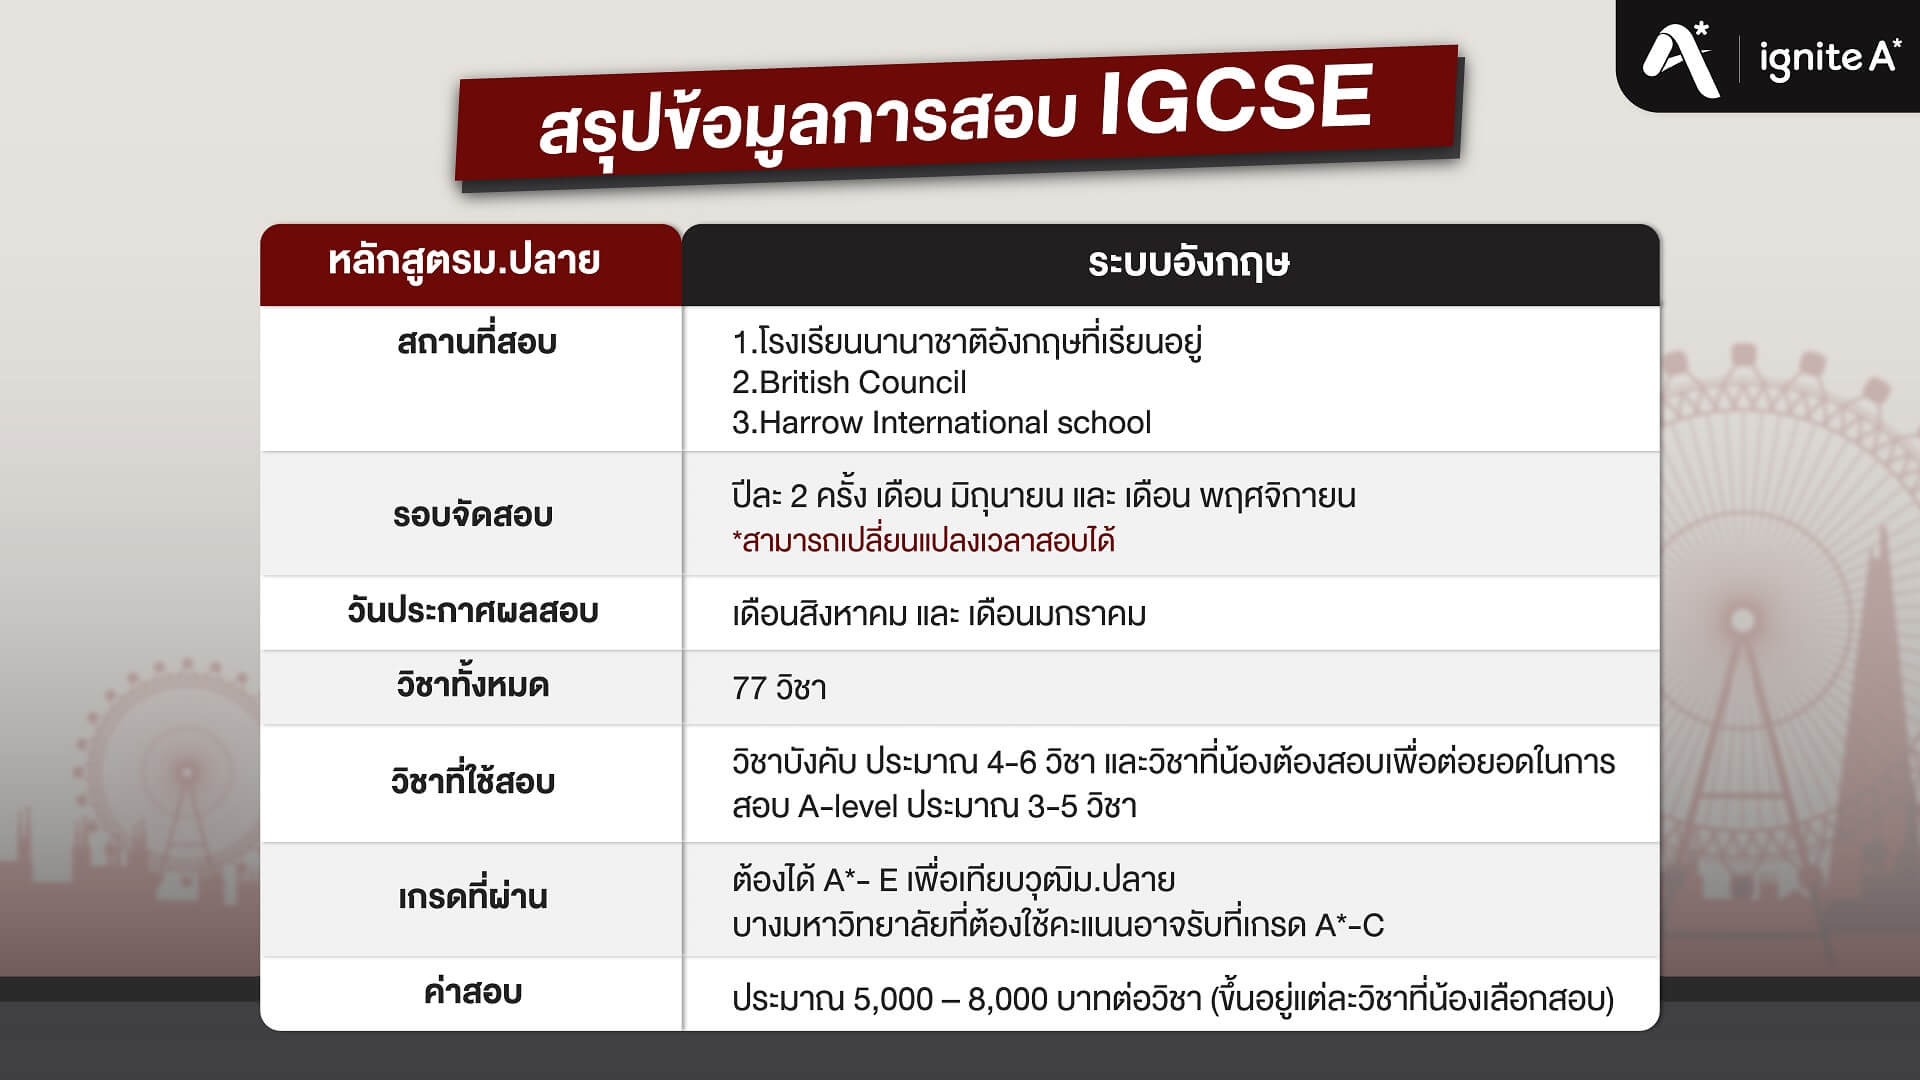 IGCSE summarize